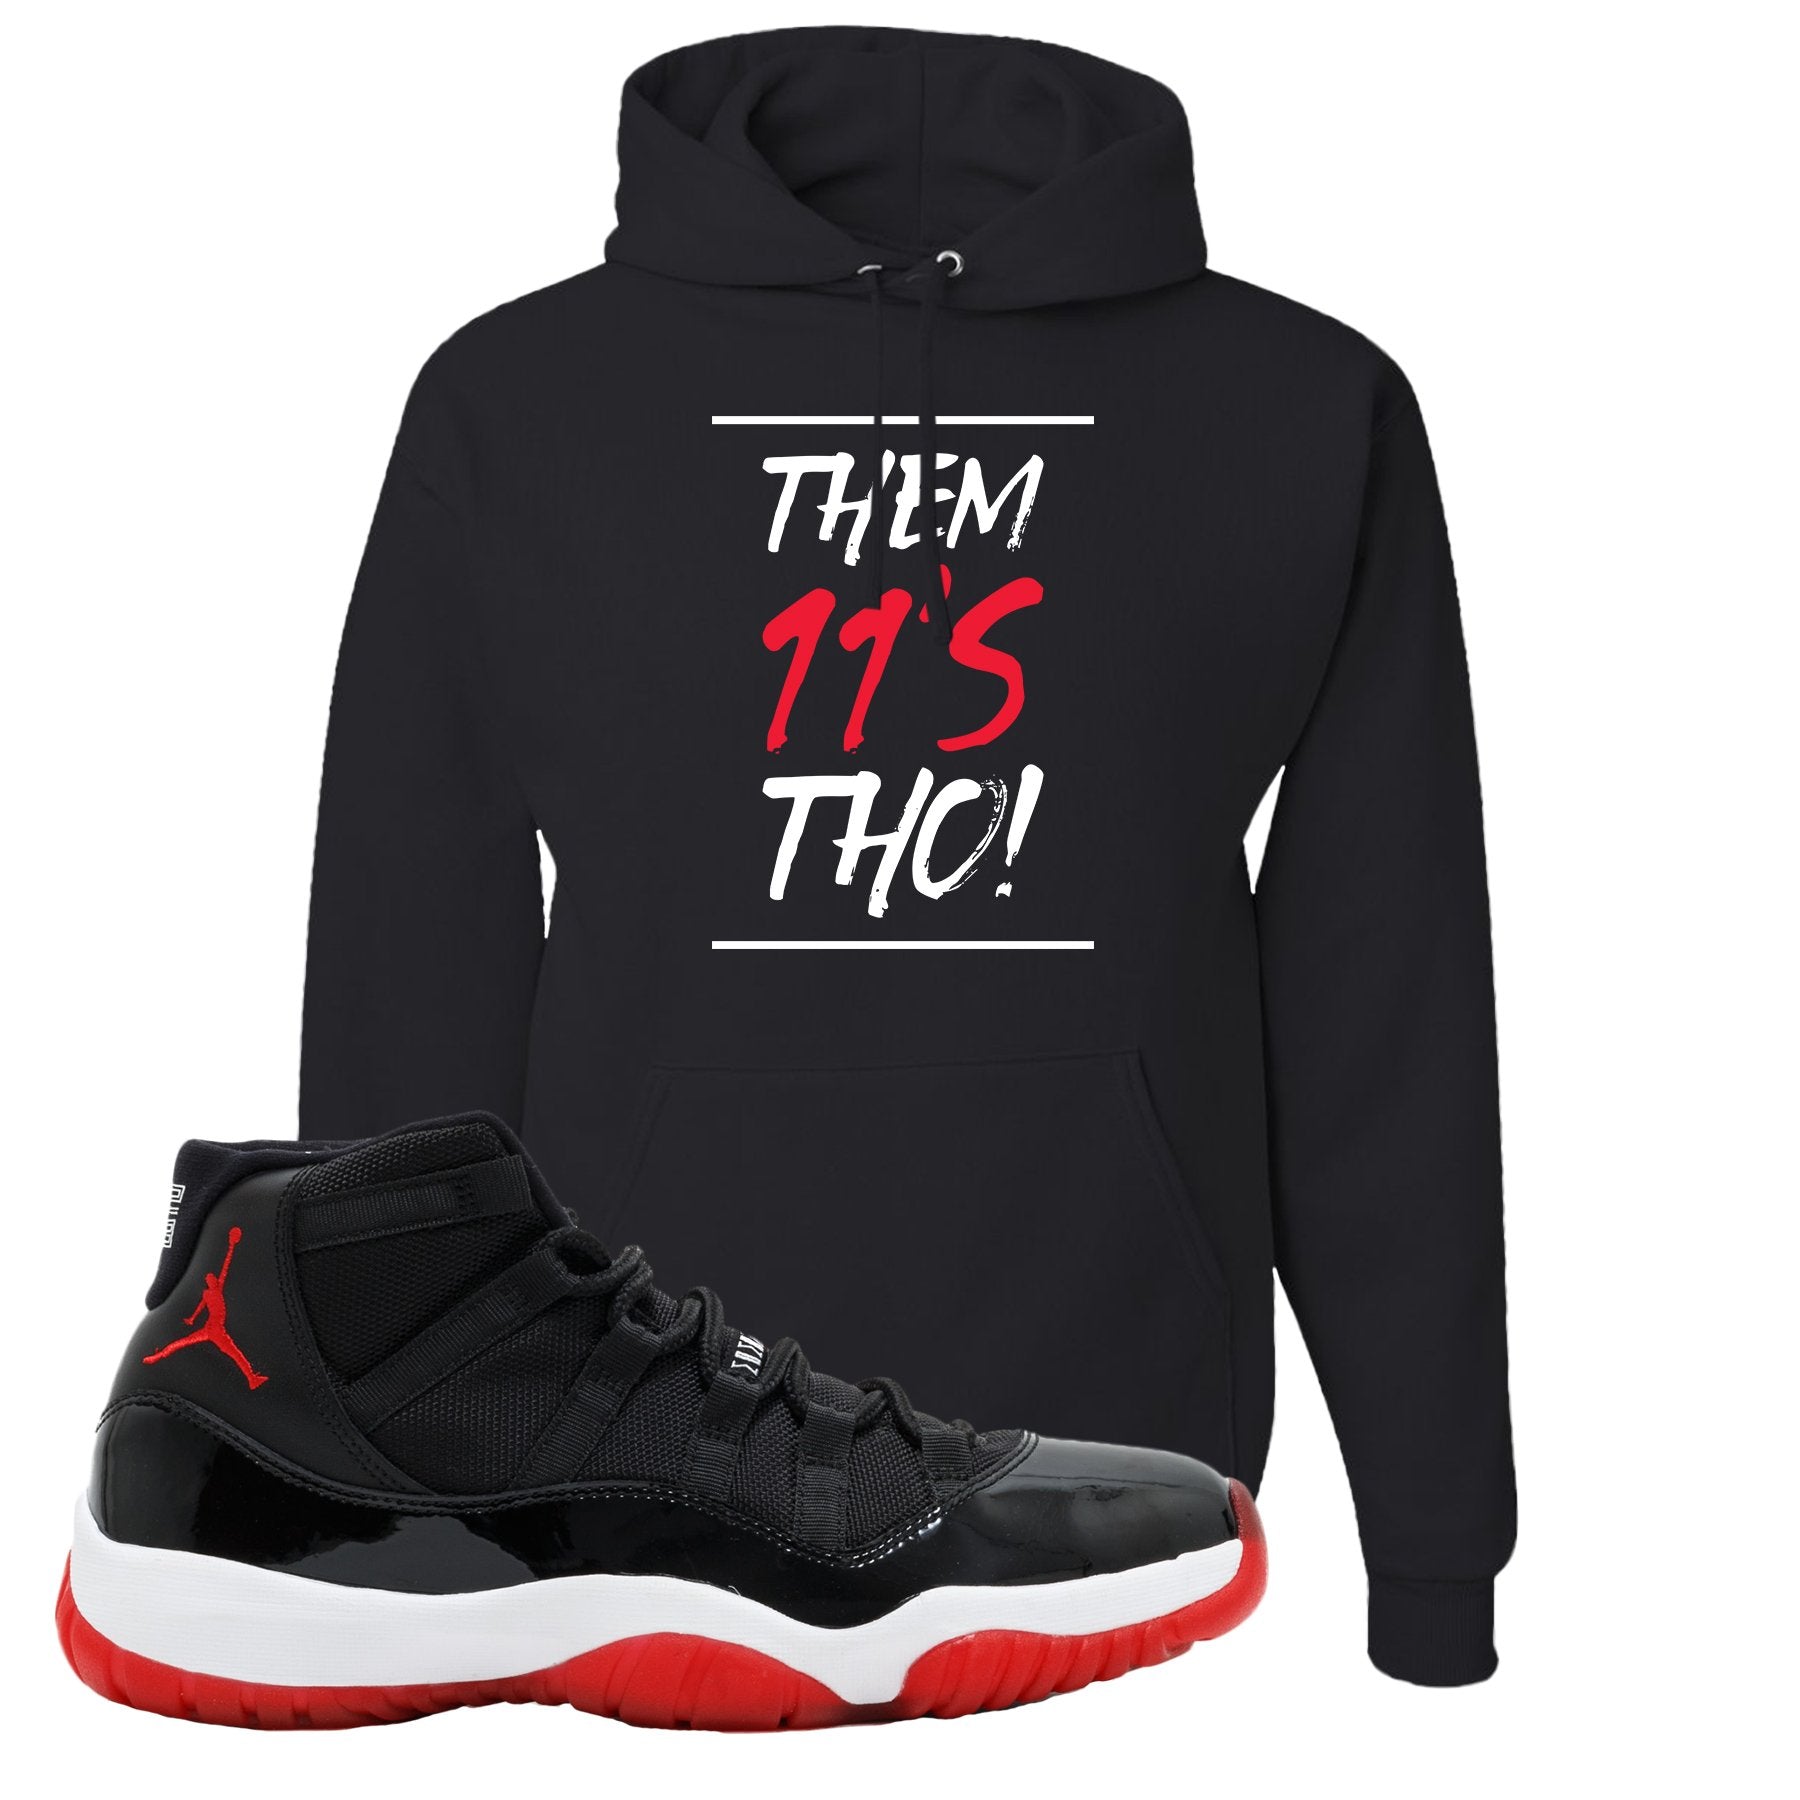 Jordan 11 Bred Them 11s Tho! Black Sneaker Hook Up Pullover Hoodie